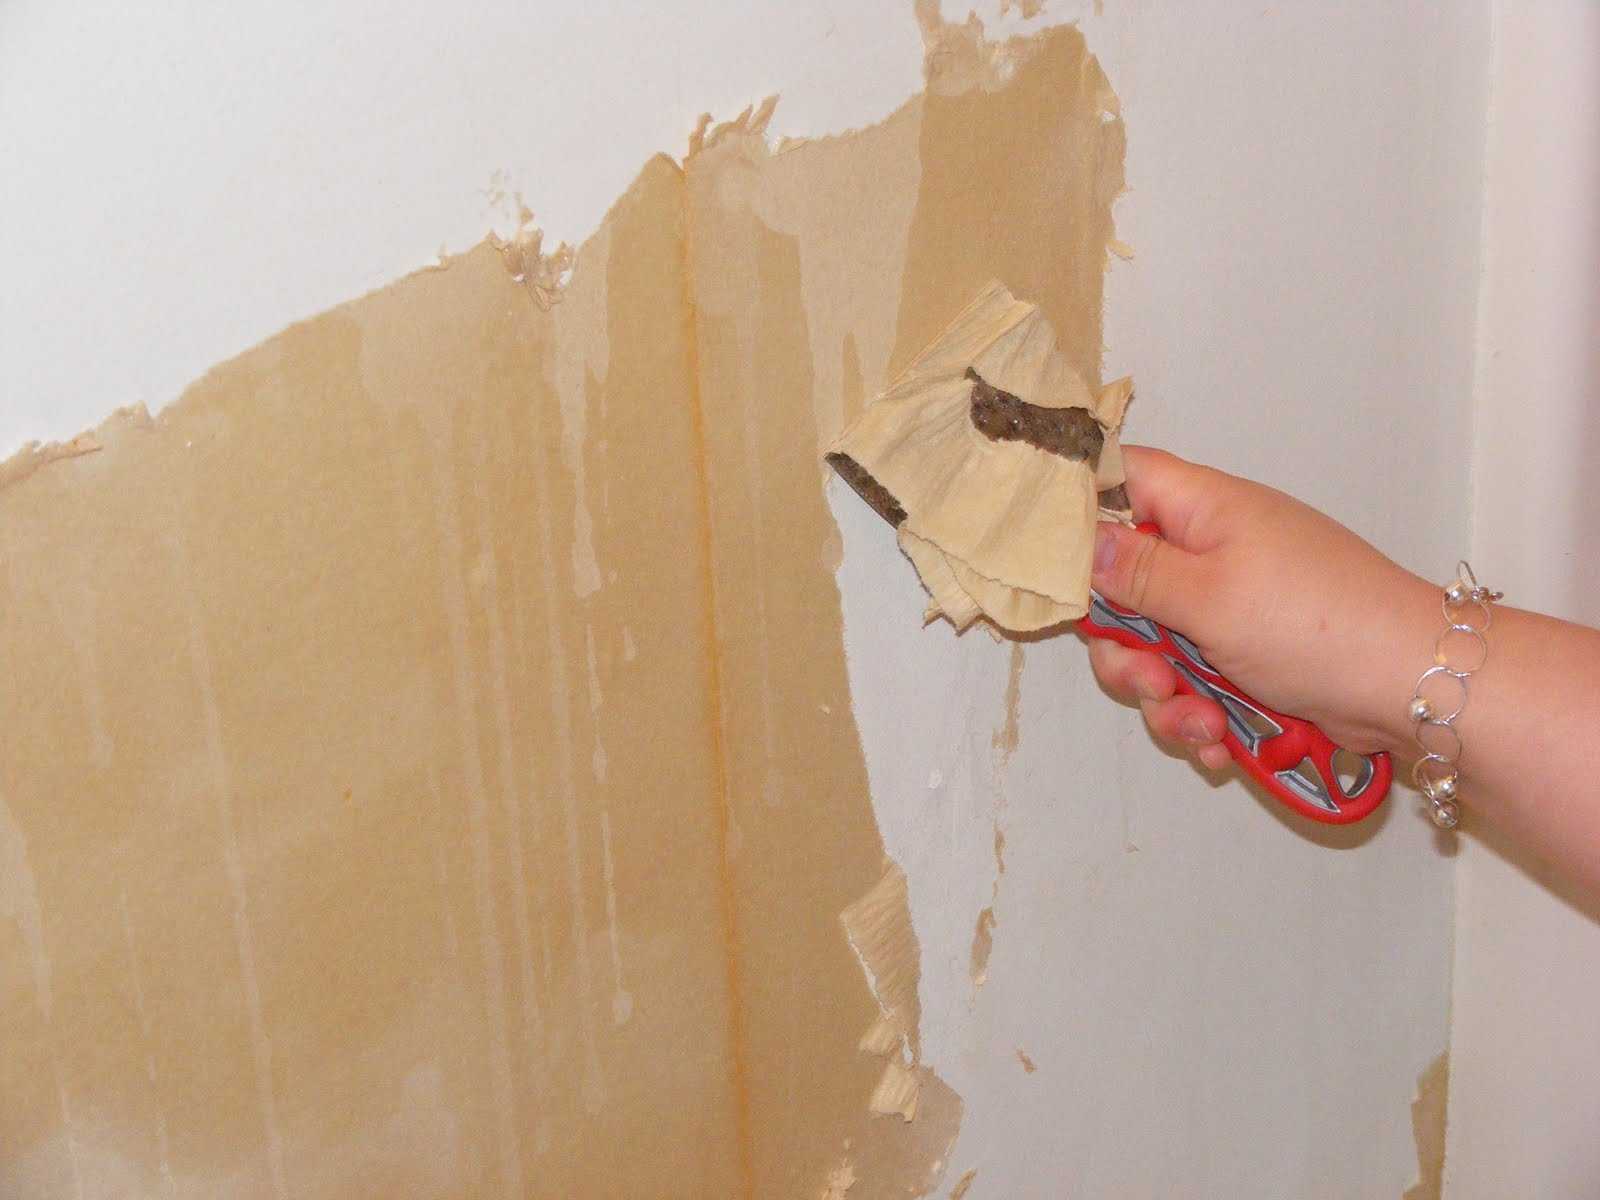 Оклейка стен обоями пошаговая технология - только ремонт своими руками в квартире: фото, видео, инструкции